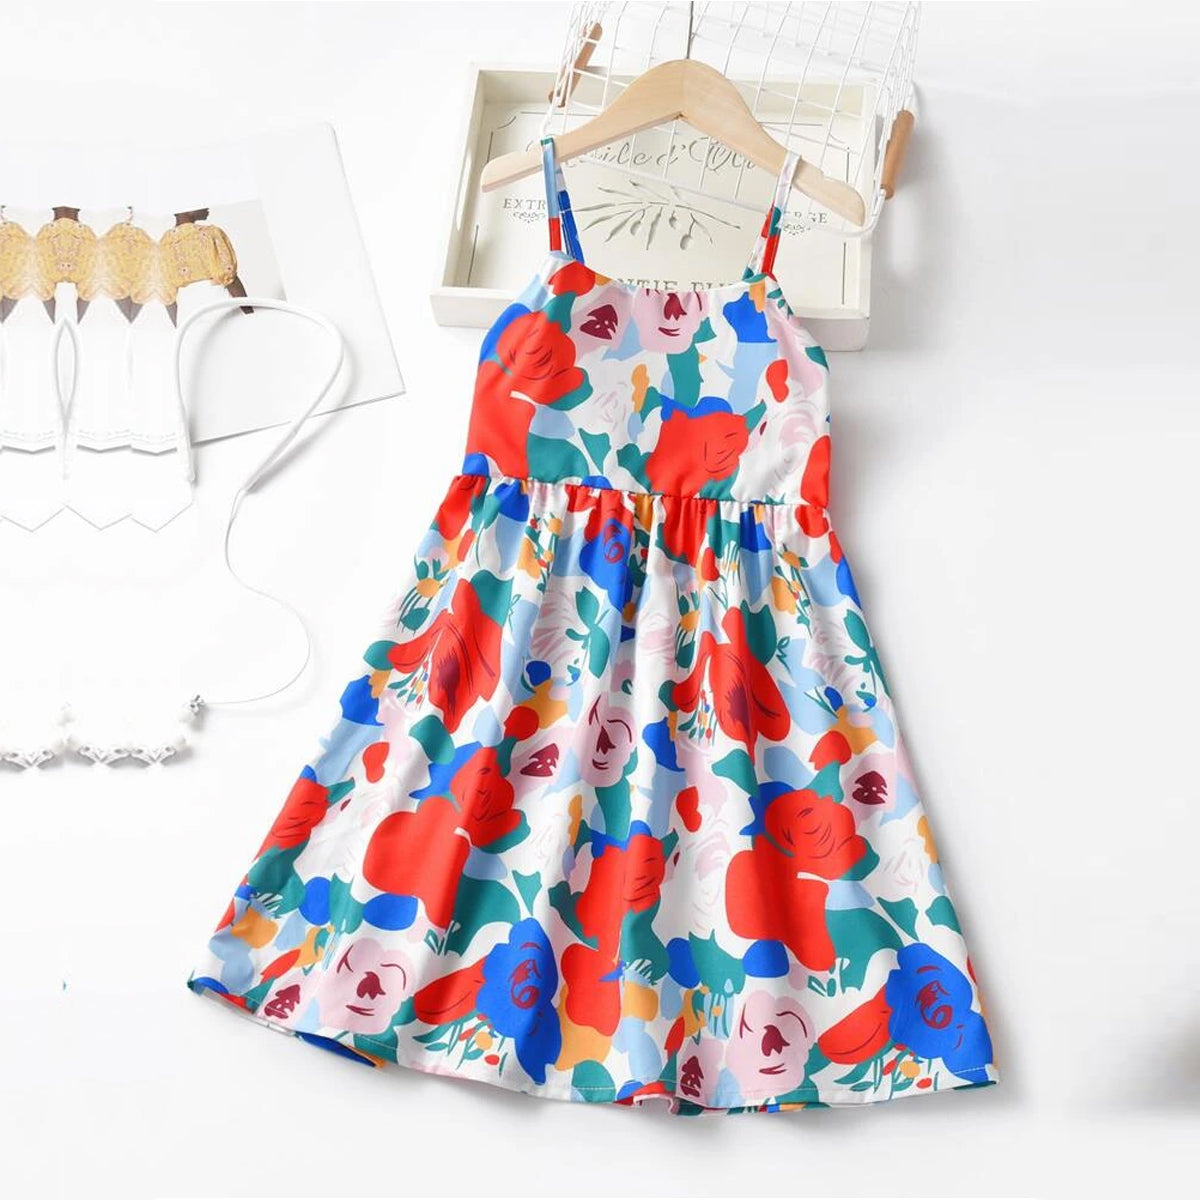 Venutaloza Girls Cotton Designer Dresses_Frocks ( Combo Pack Of 4 ) for Baby Girls.